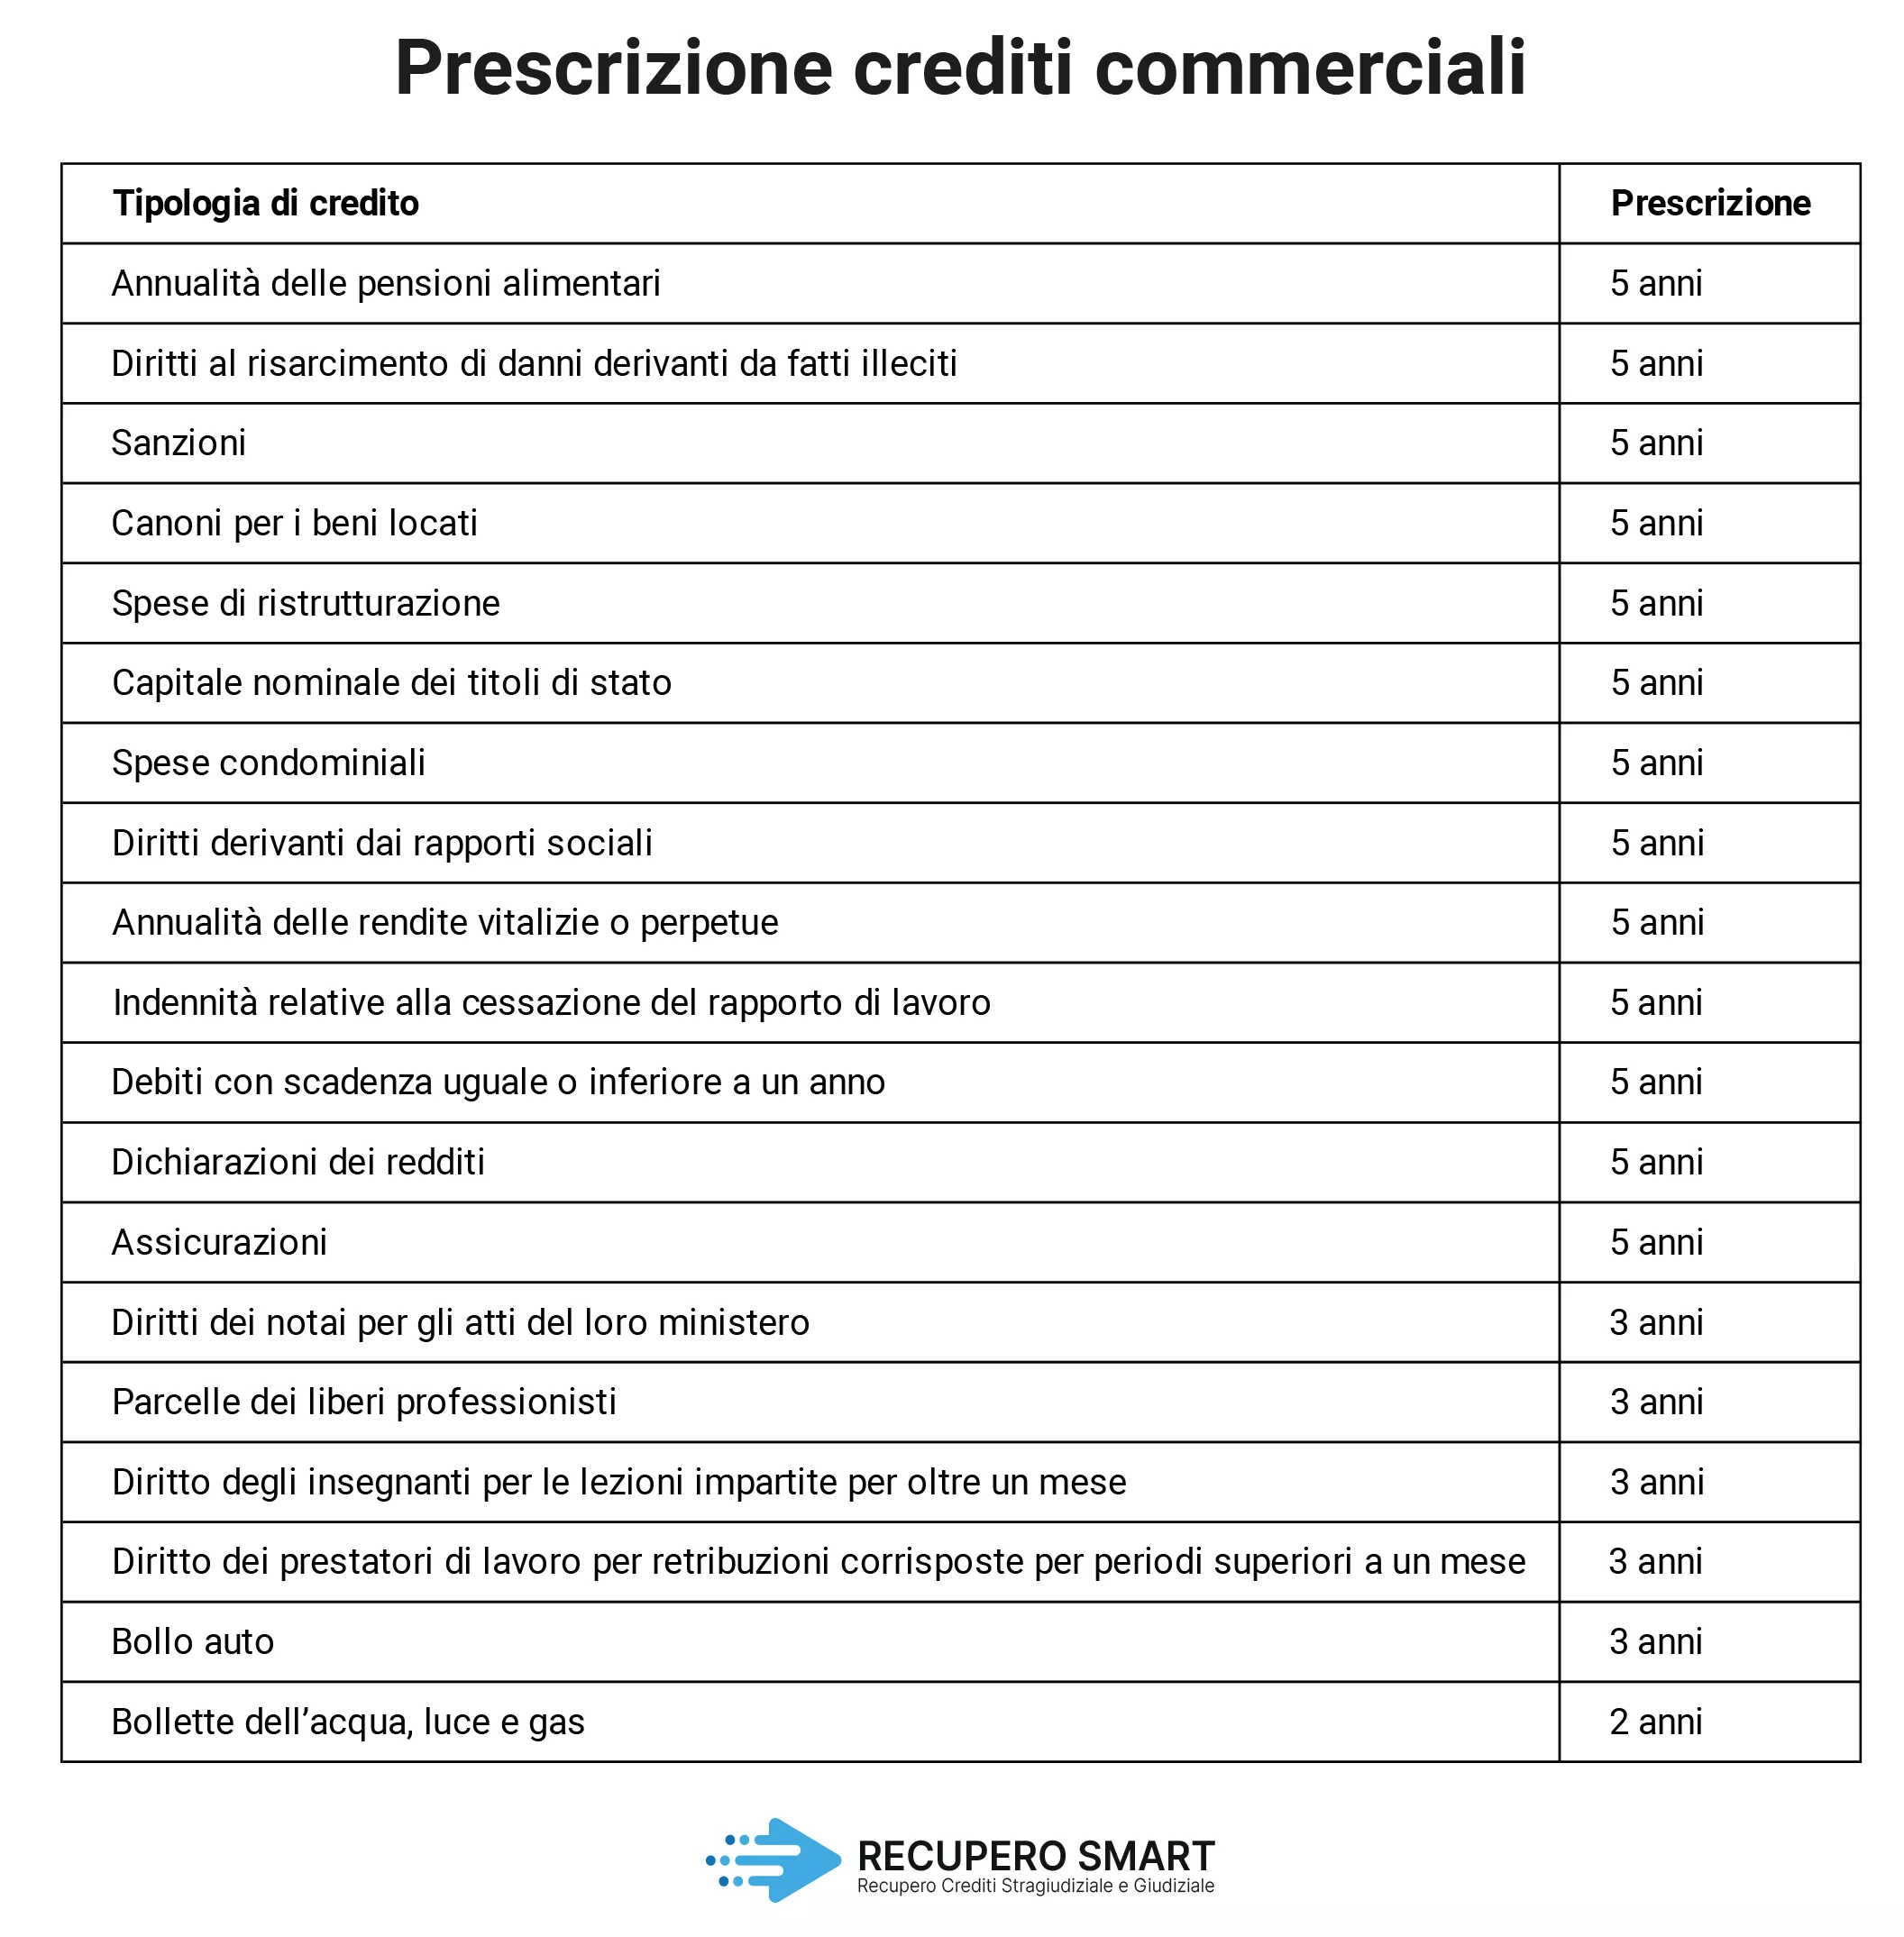 Prescrizione crediti - Recupero Smart